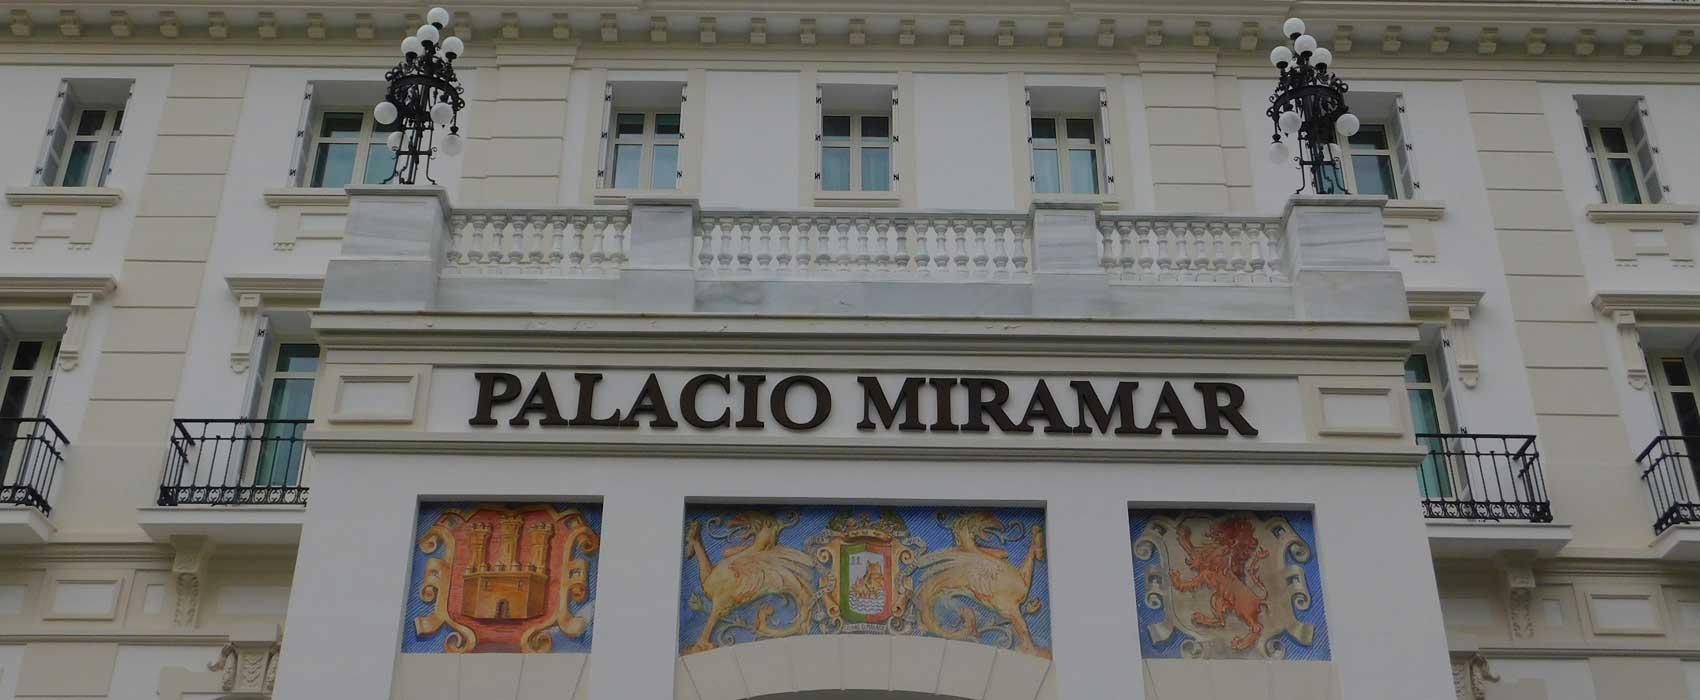 Das Hotel ' Palacio Miramar ' Malaga